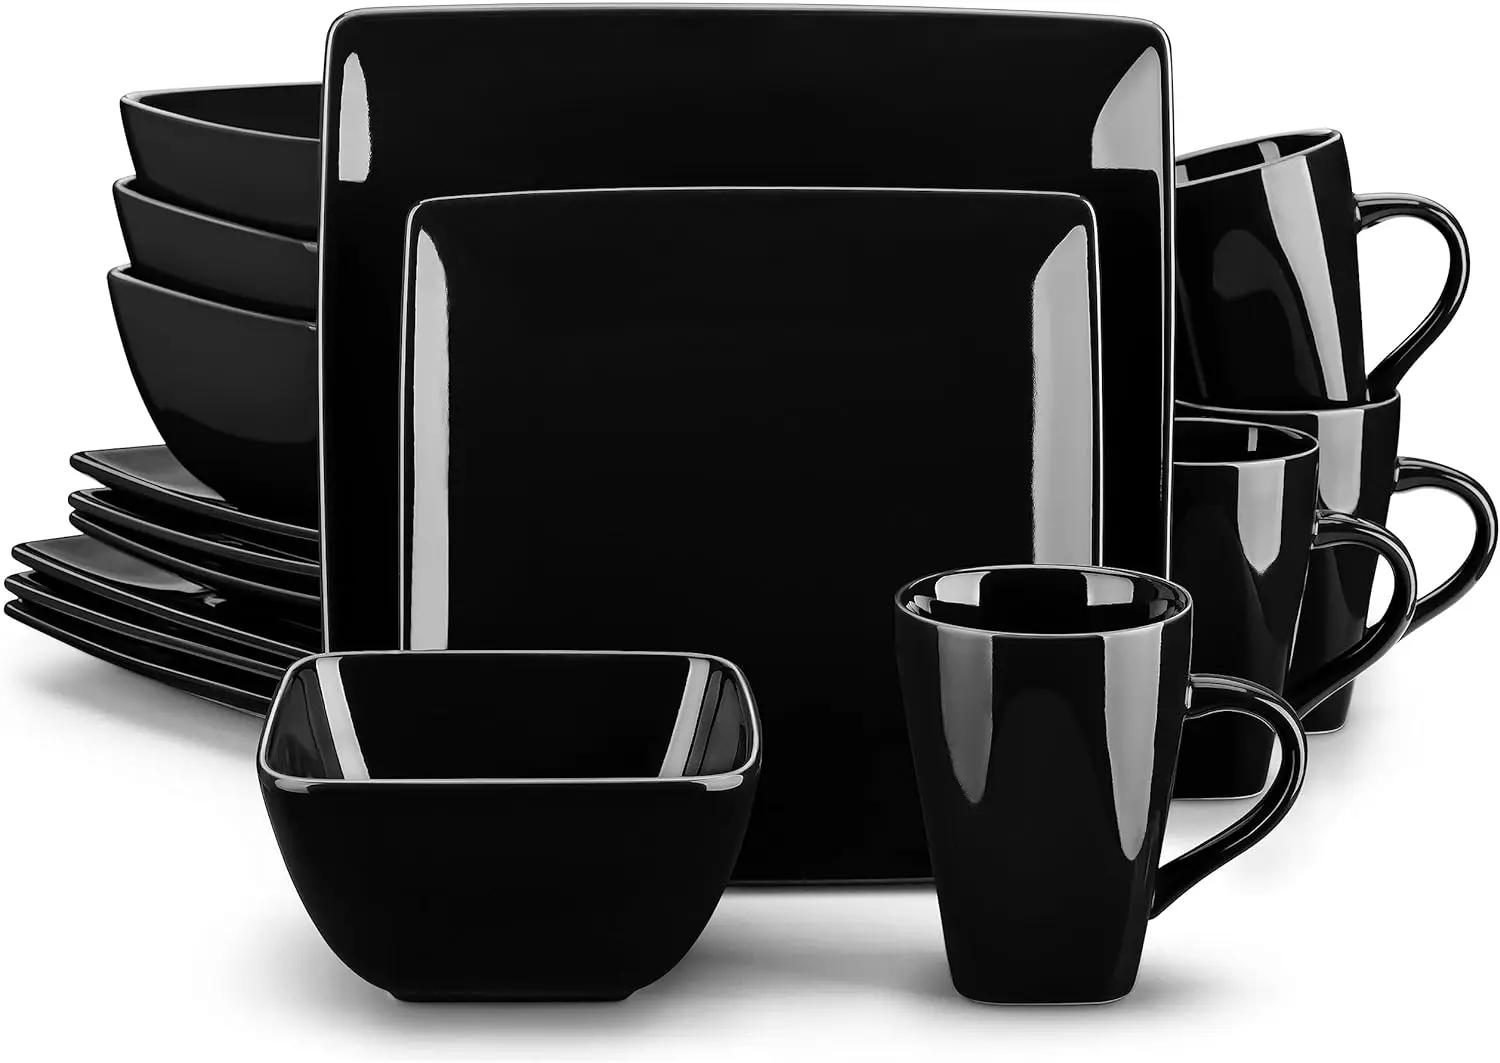 

Набор посуды vancasso Soho, 16 штук, квадратная посуда из черной глины, обеденная тарелка, десертная тарелка, миски, кружки, сервис